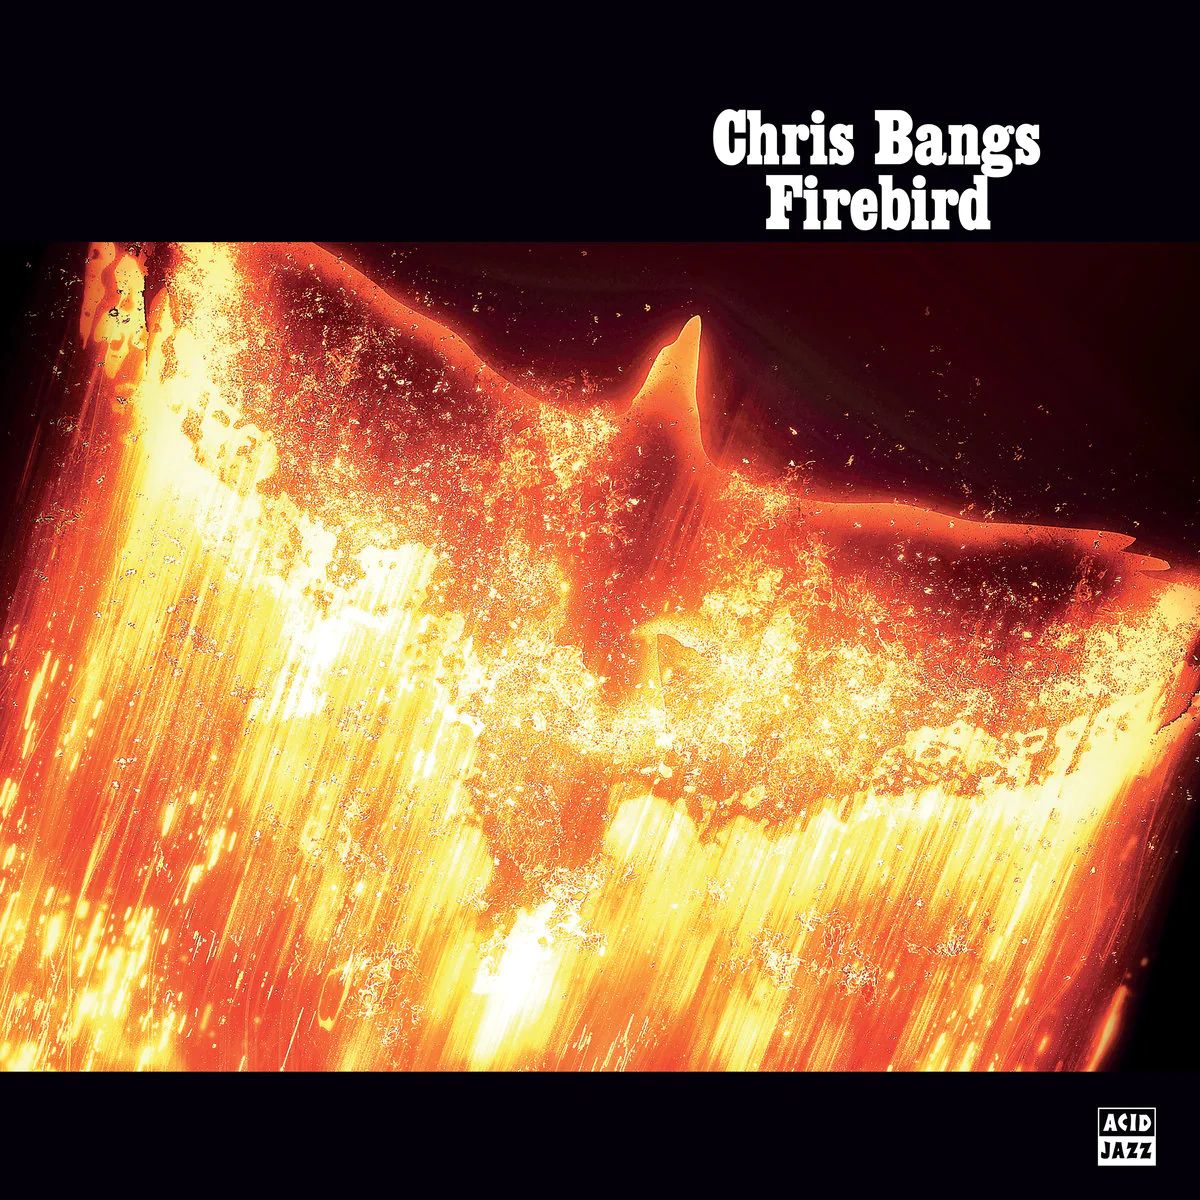 Виниловая пластинка Bangs, Chris, Firebird (0676499066157) виниловая пластинка madsen chris bonfire